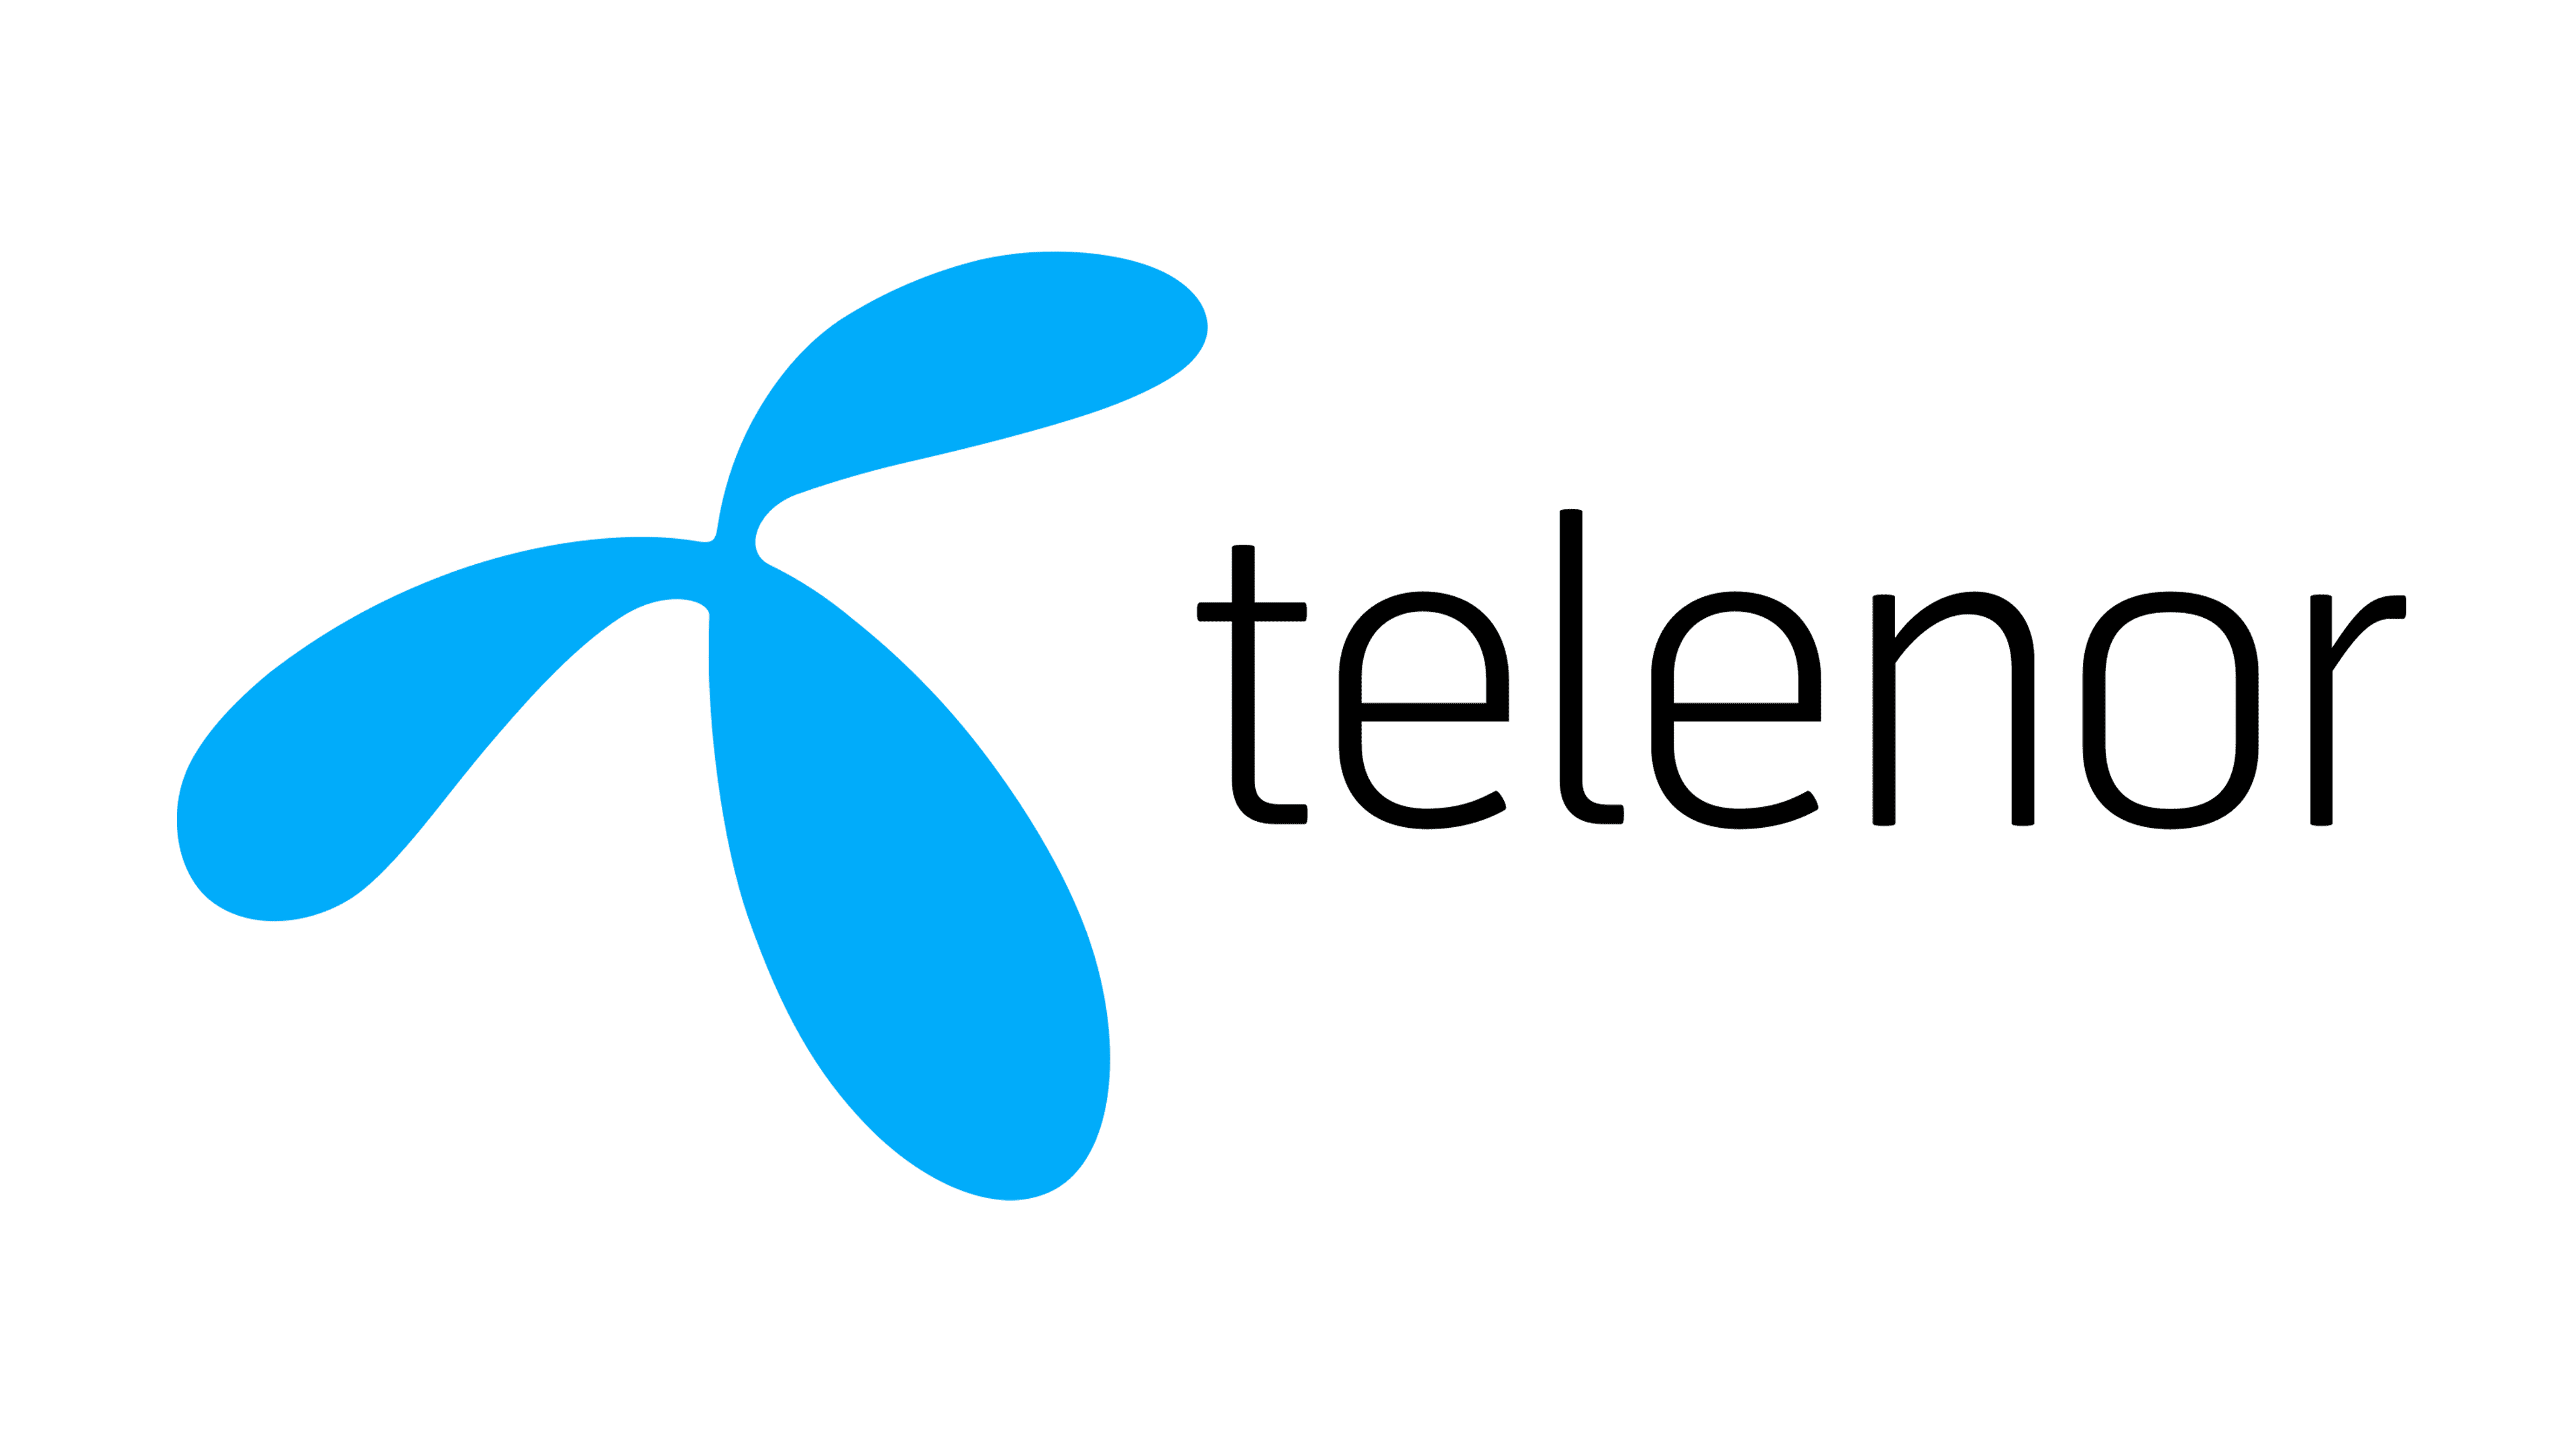 Academic Work - Bli en del av Telenors satsning på säkra nätverks- och kommunikationstjänster genom AW Academy!